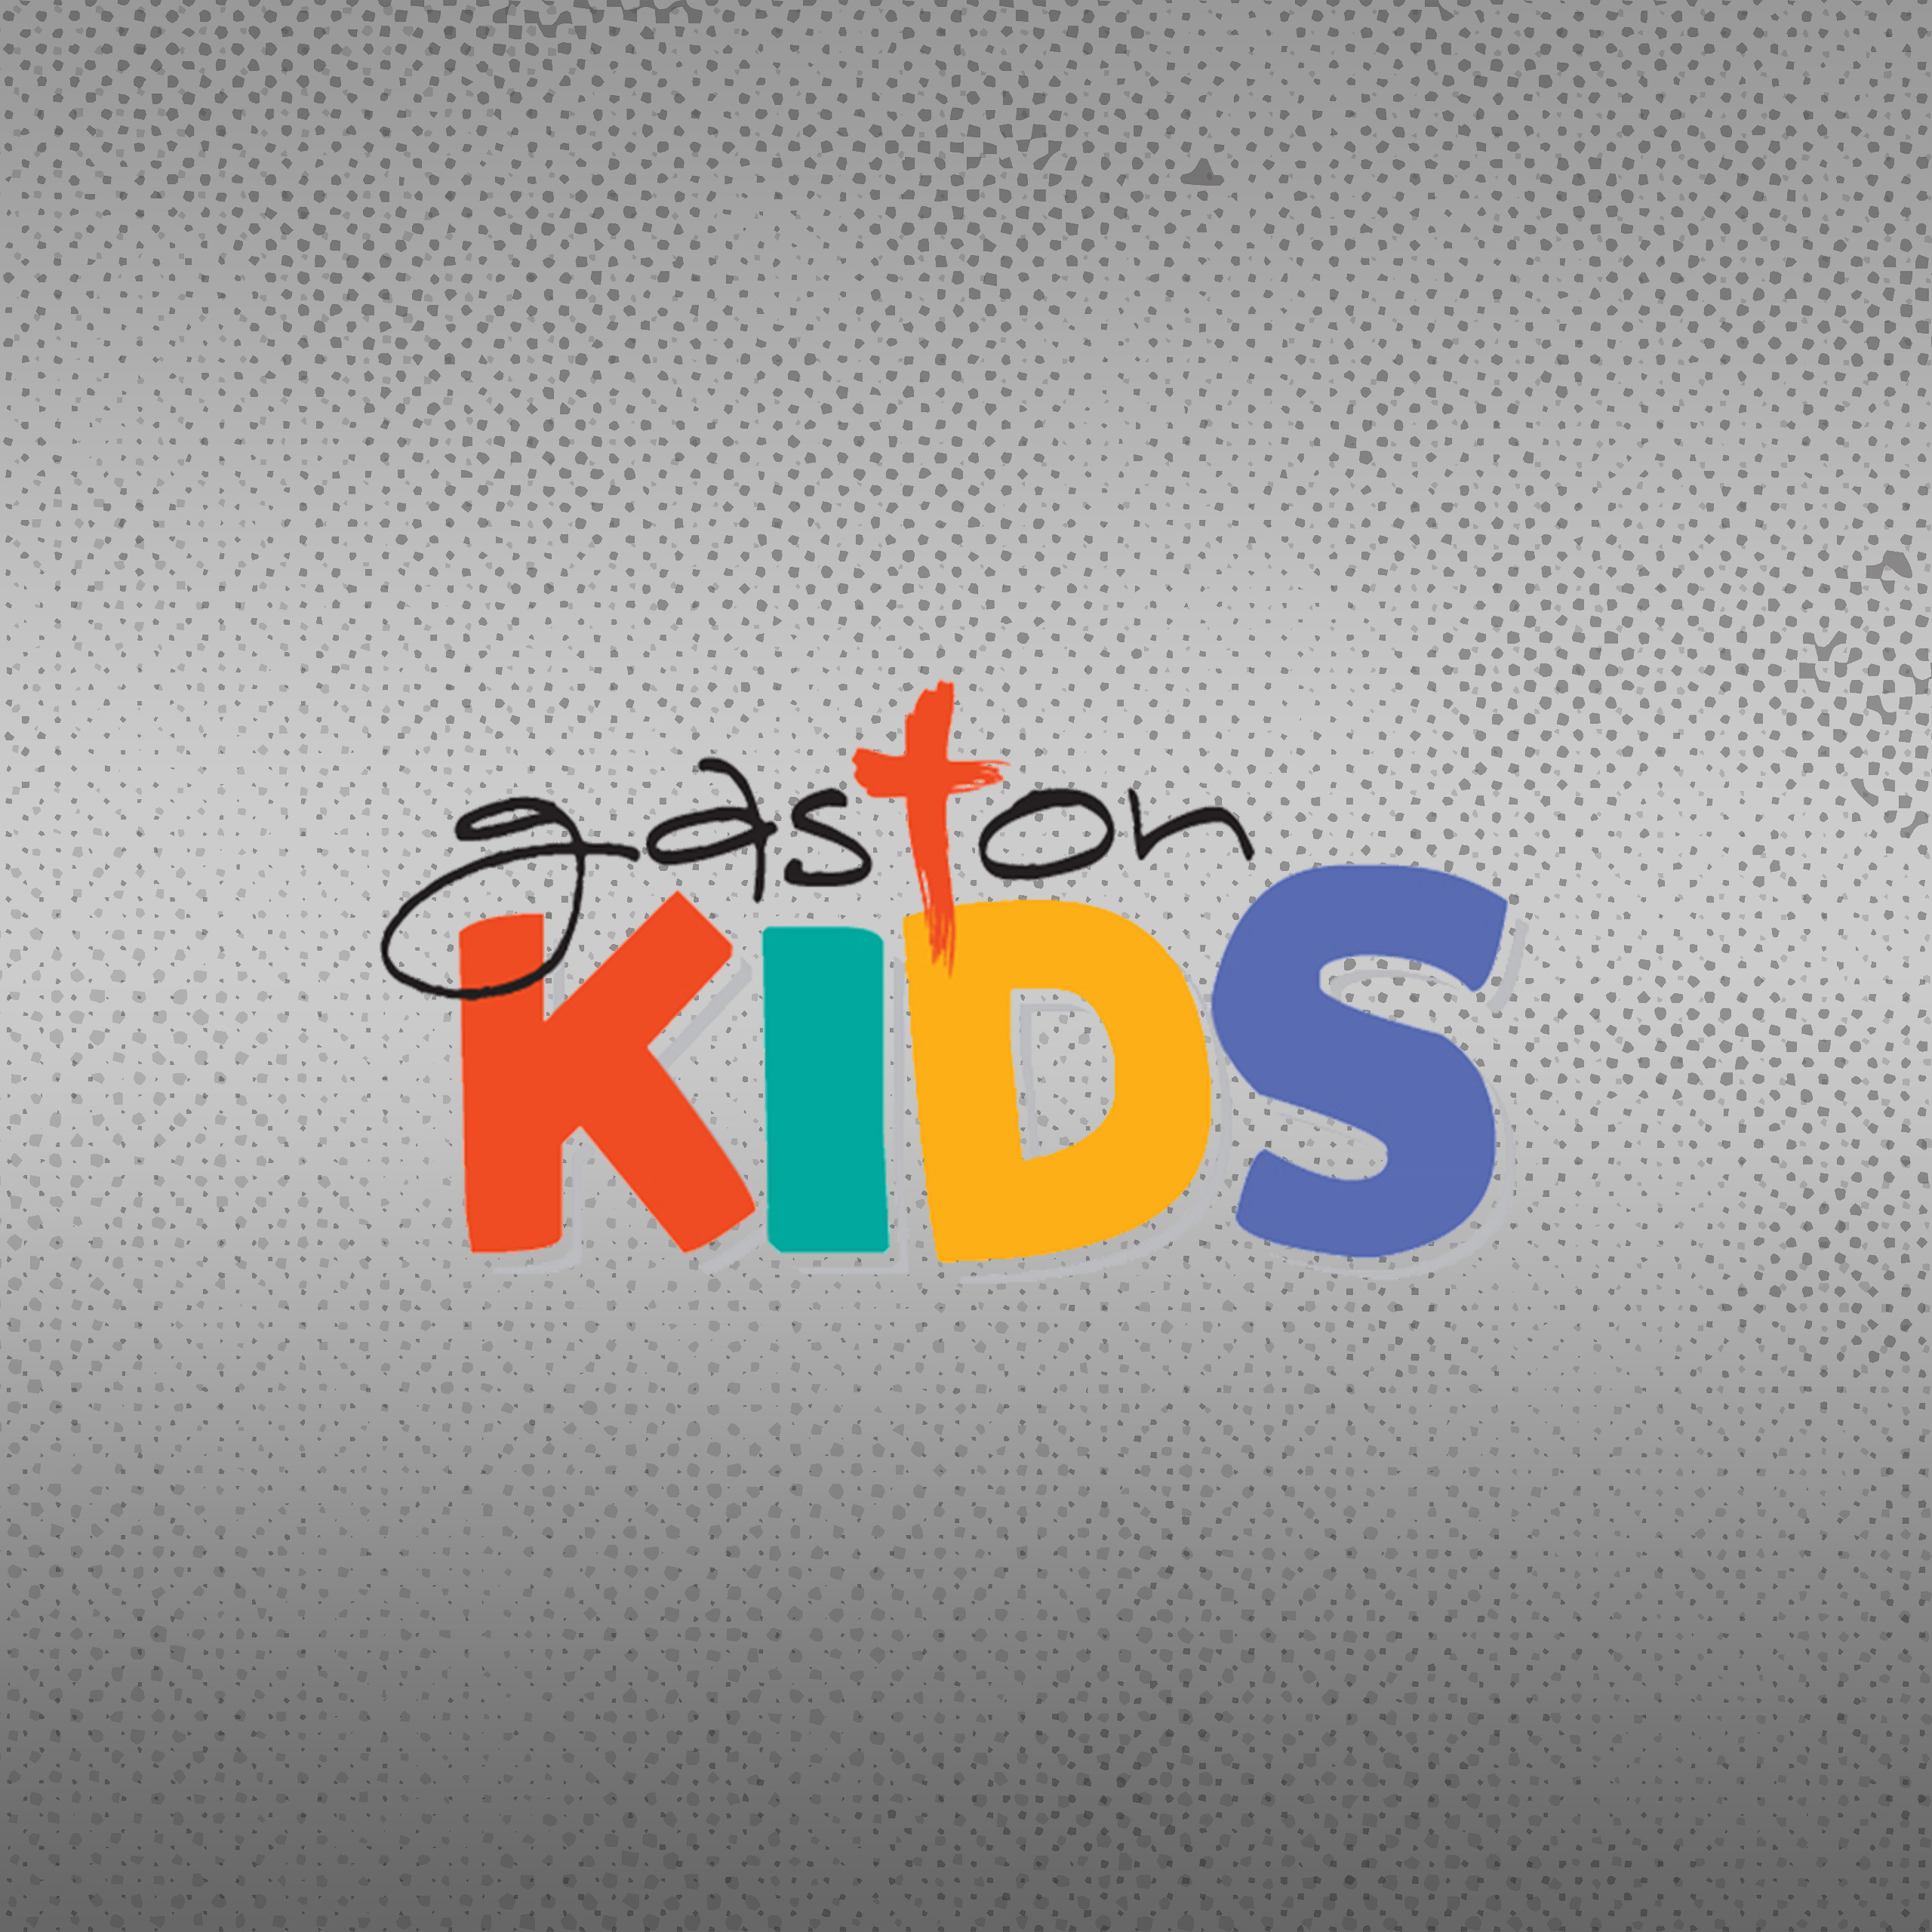 Gaston Kids - Children's Search